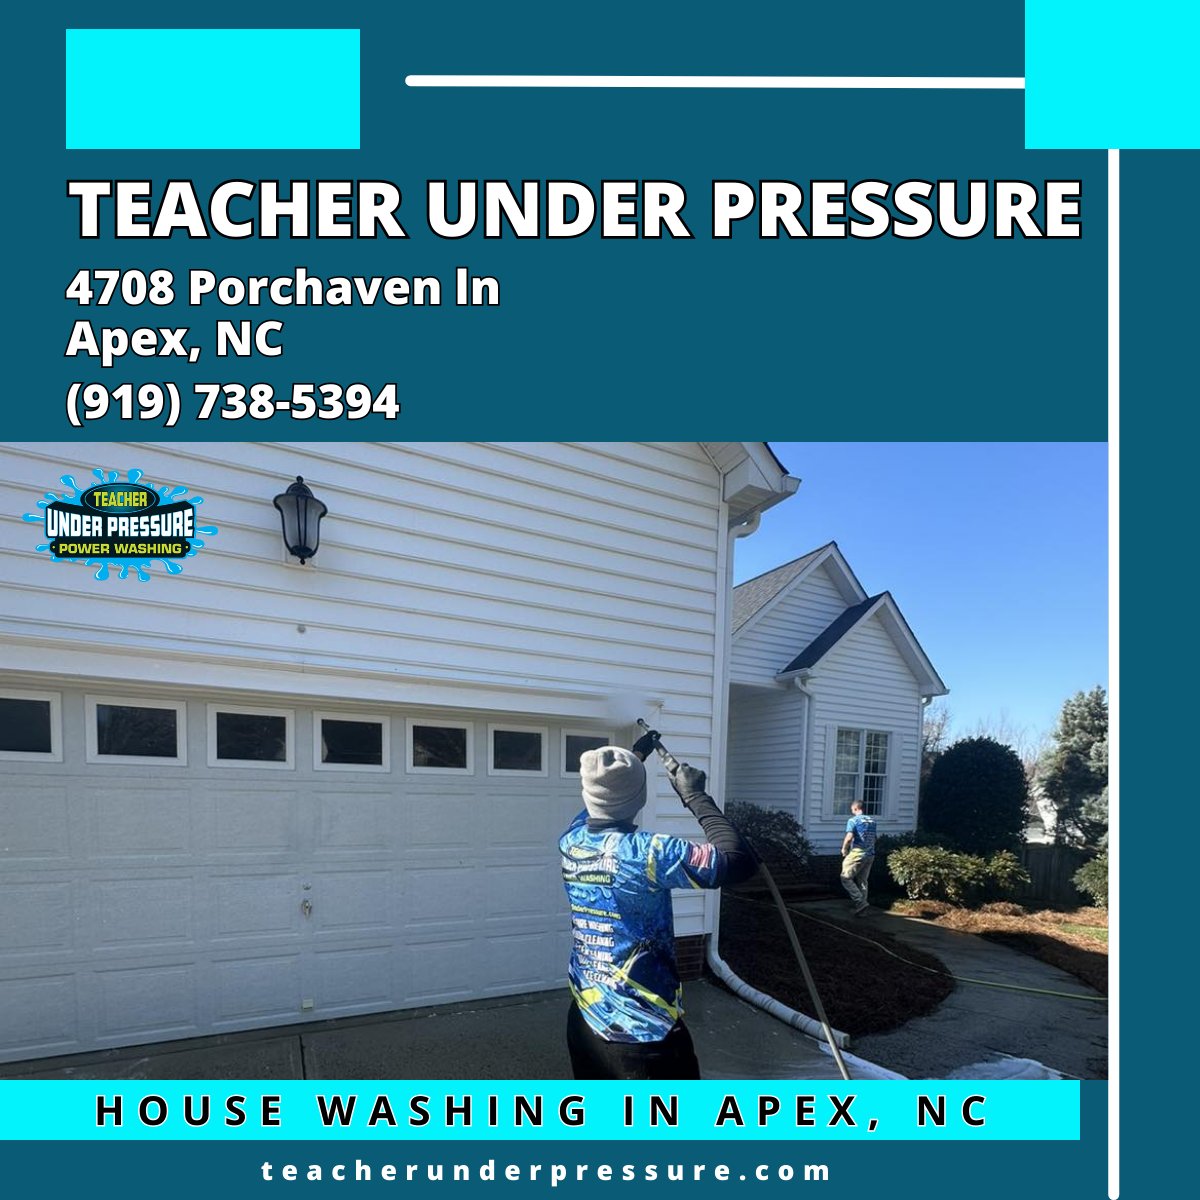 House Washing in Apex, NC - Teacher Under Pressure

teacherunderpressure.com/house-washing/

Teacher Under Pressure
4708 Porchaven Ln
Apex, NC 27539
(919) 738-5394

google.com/maps/place/Tea…

#HouseWashing #HouseWashingApexNC